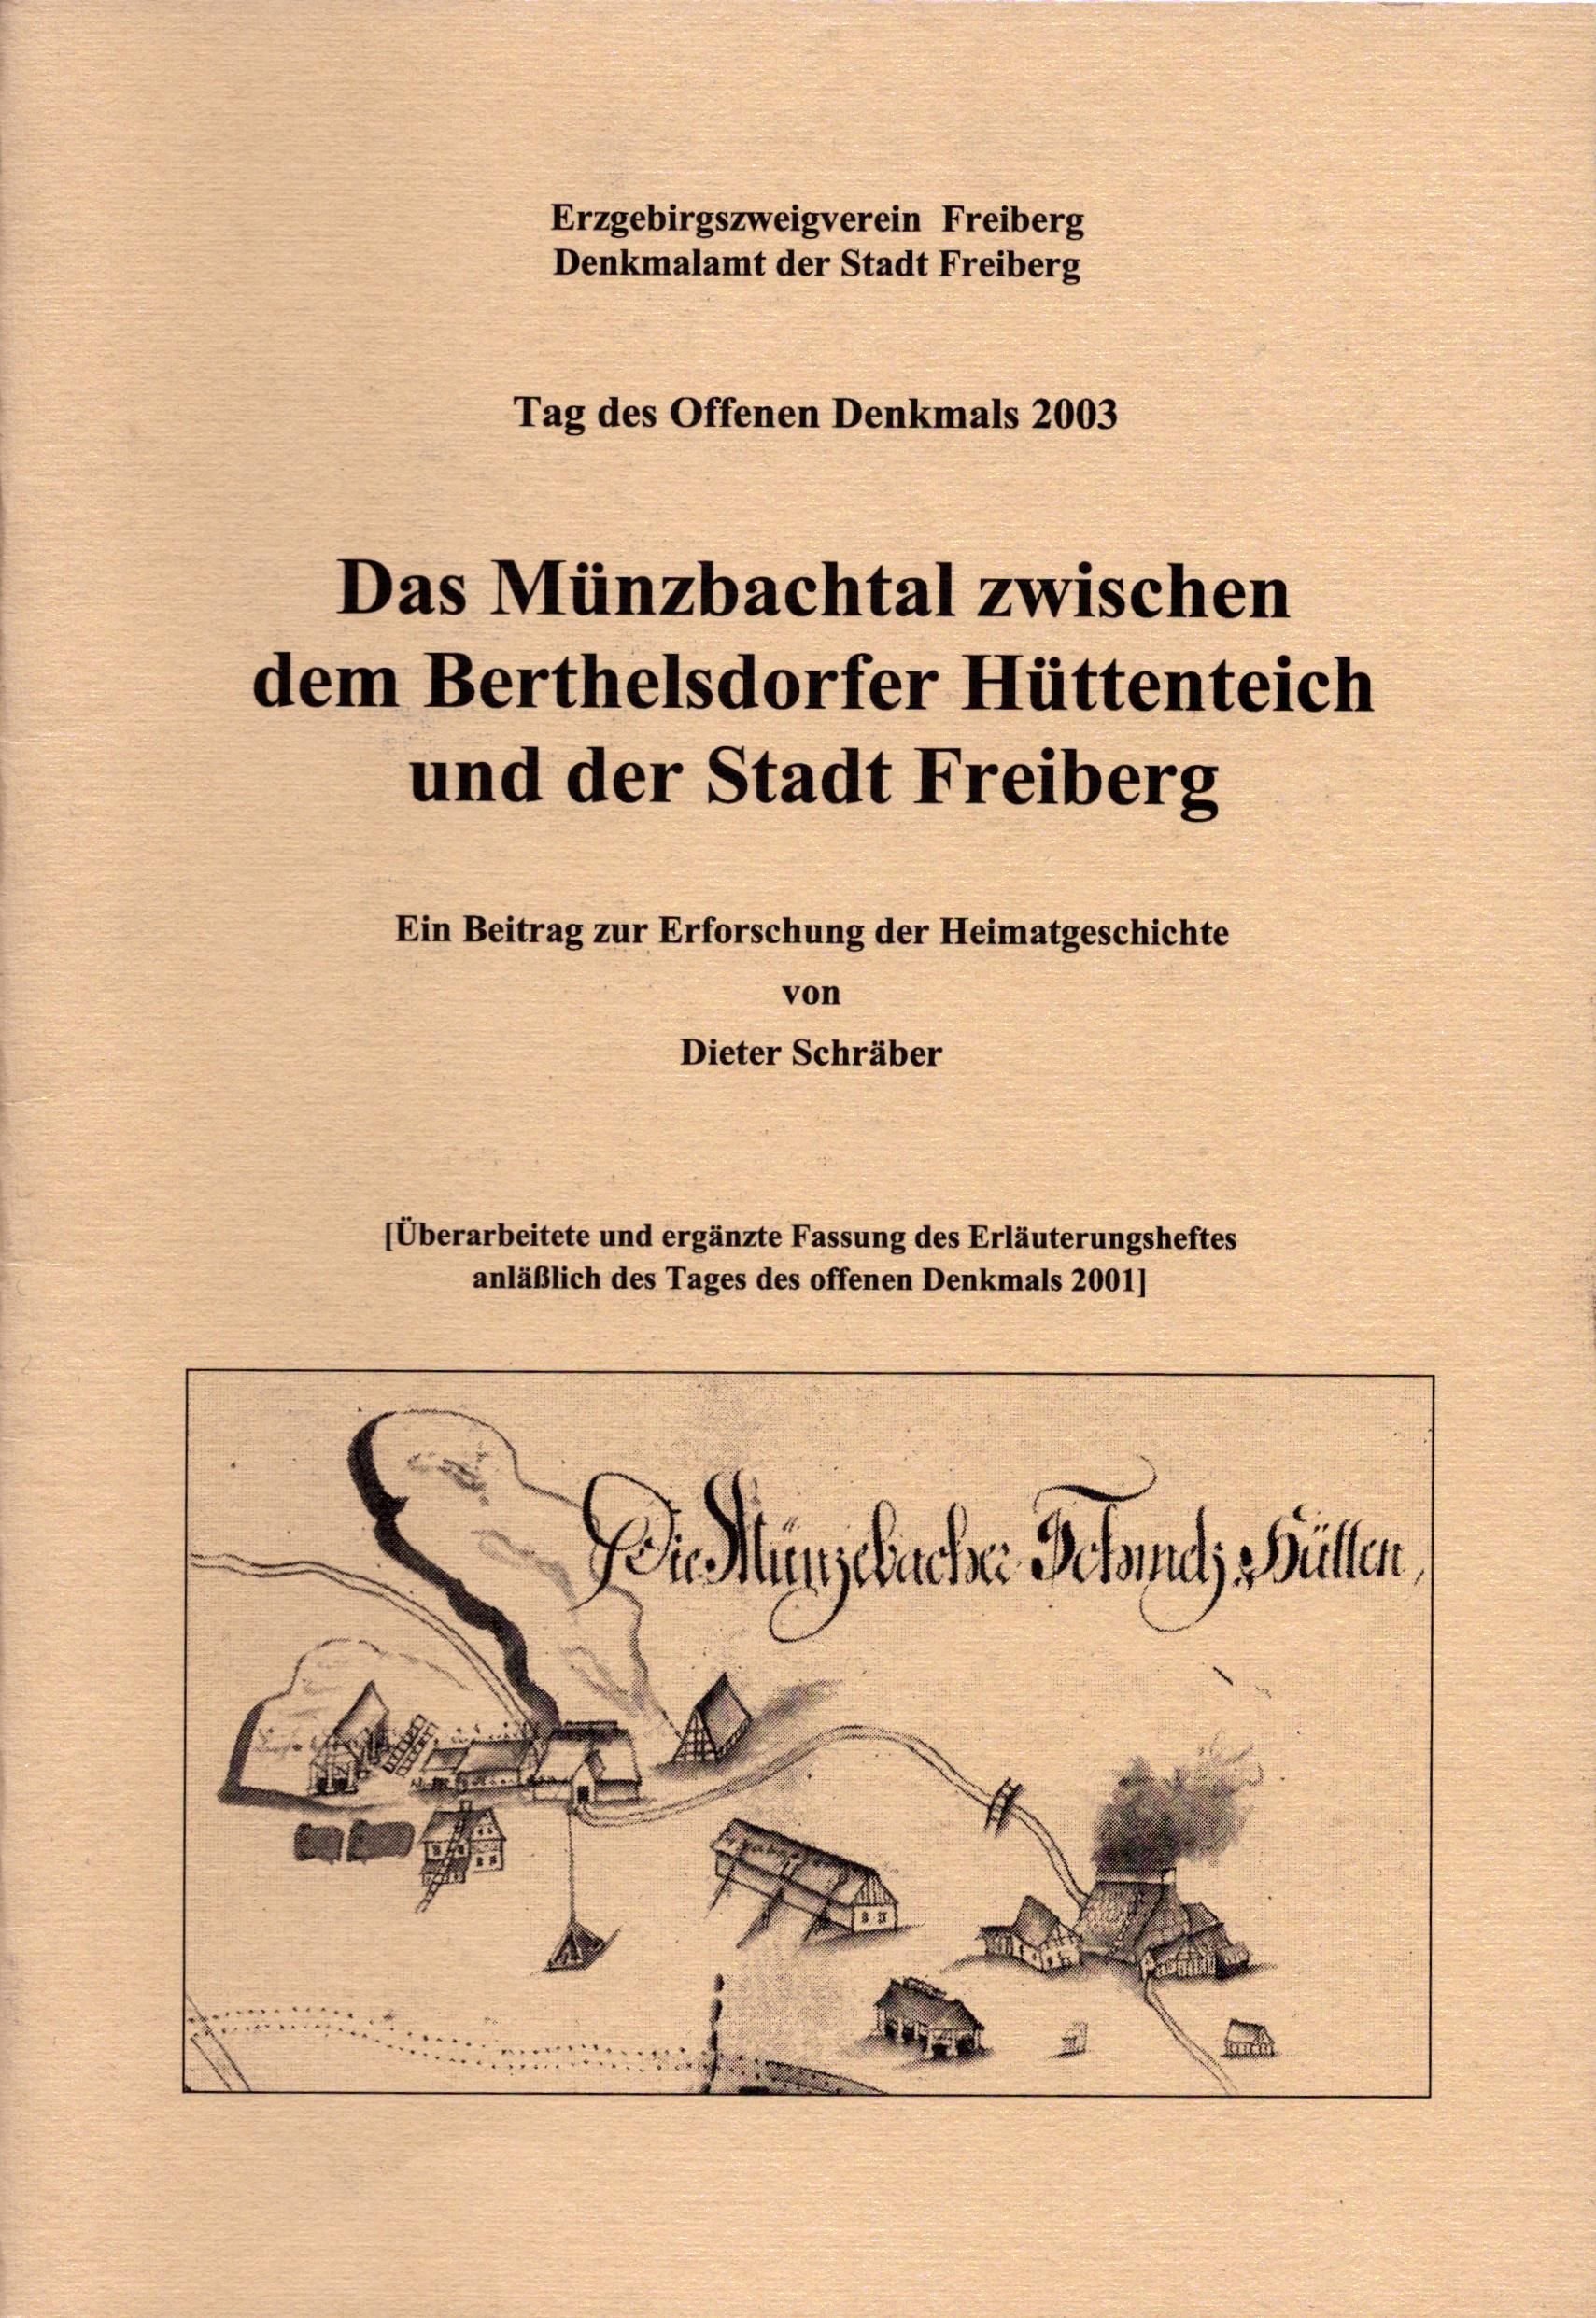 Das Münzbachtal zwischen dem Berthelsdorfer Hüttenteich und der Stadt Freiberg (Archiv SAXONIA-FREIBERG-STIFTUNG CC BY-NC-SA)